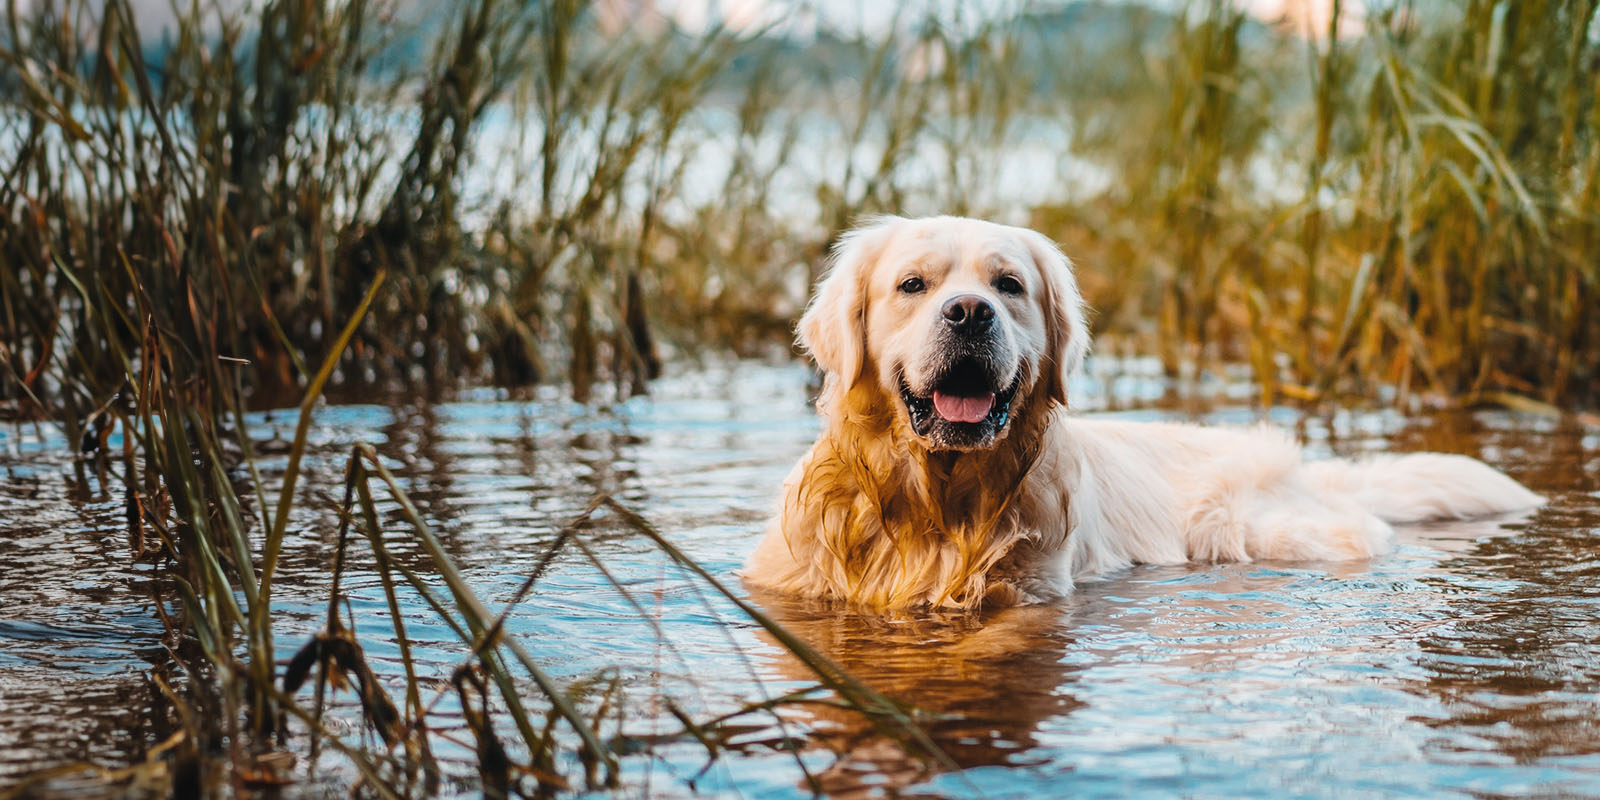 Hund badar i sjö omgiven av vass